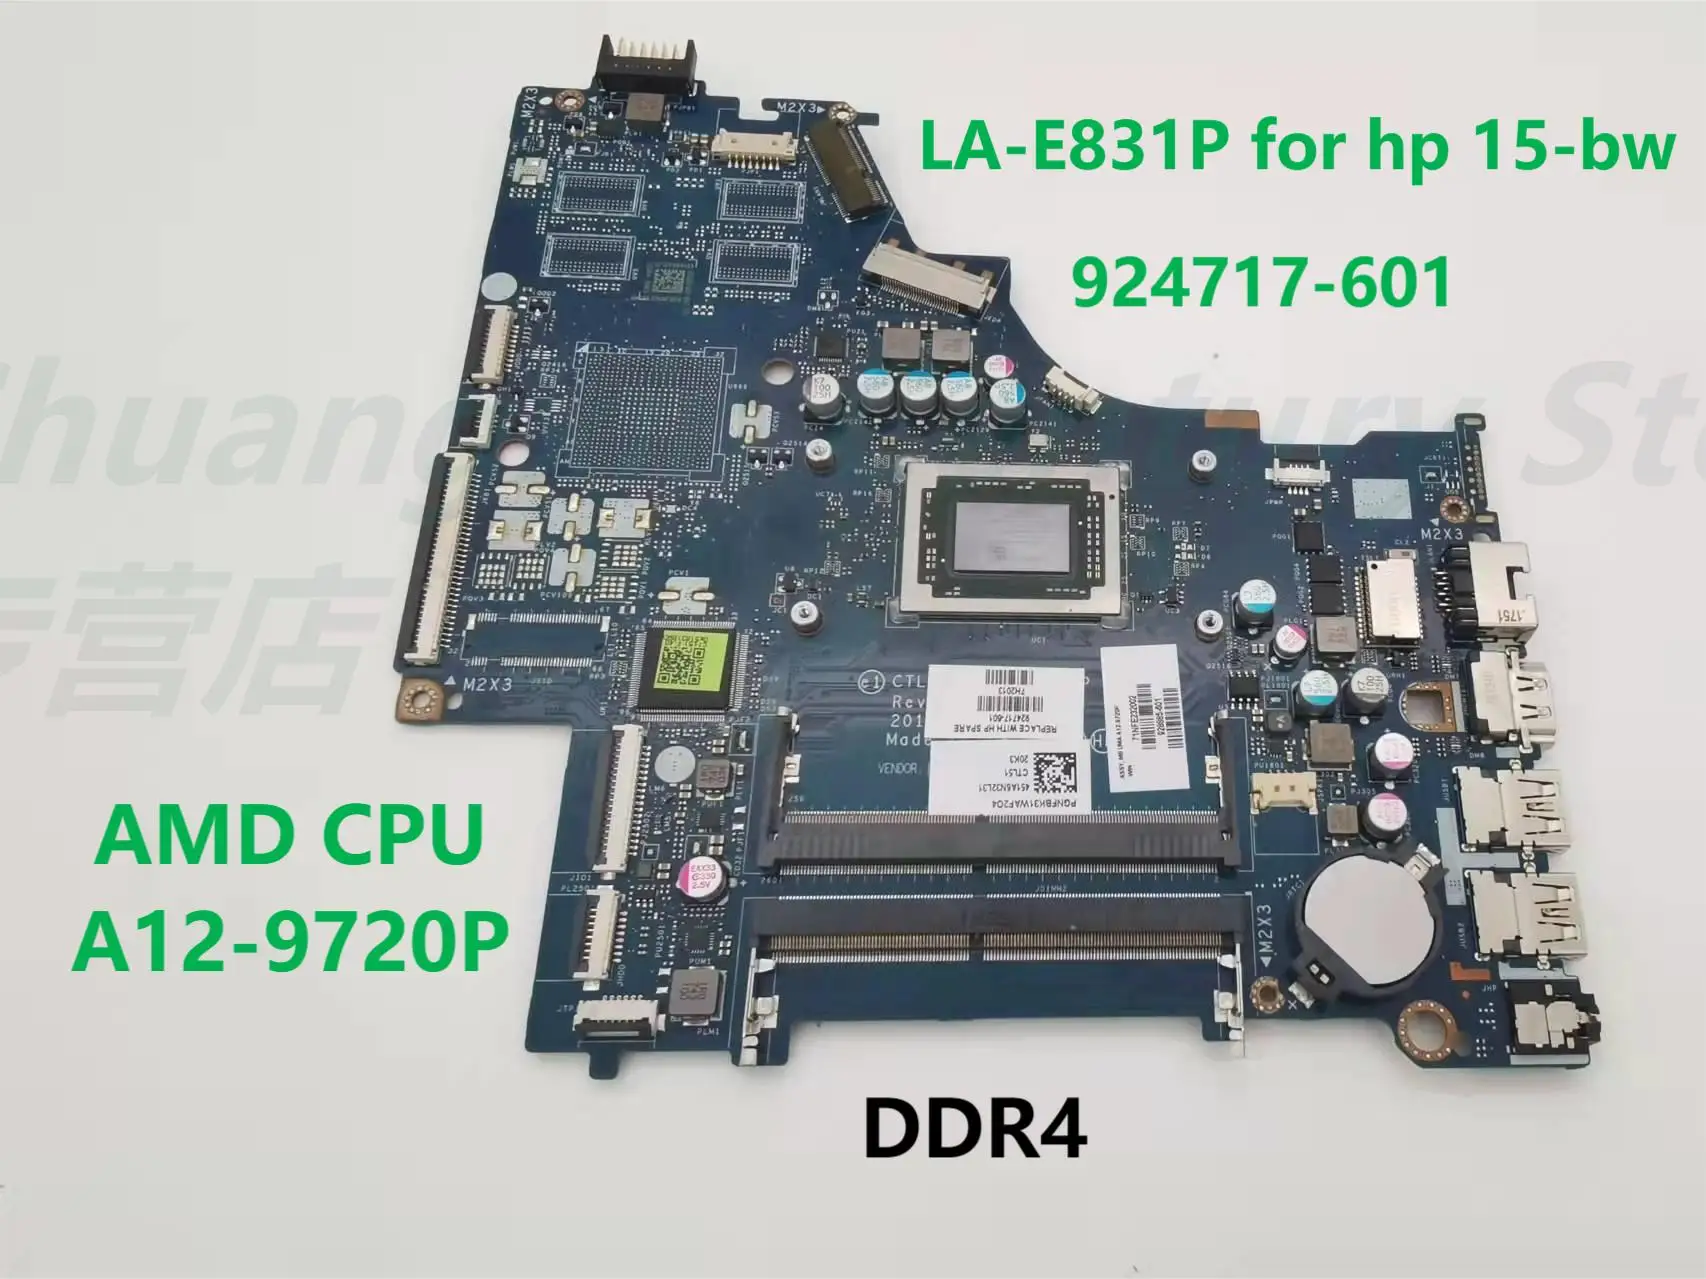 Новая материнская плата LA-E831P применима для ноутбука HP 15-BW CPU:A12-9720P 924717-601 UMA, 100% проверена перед доставкой.